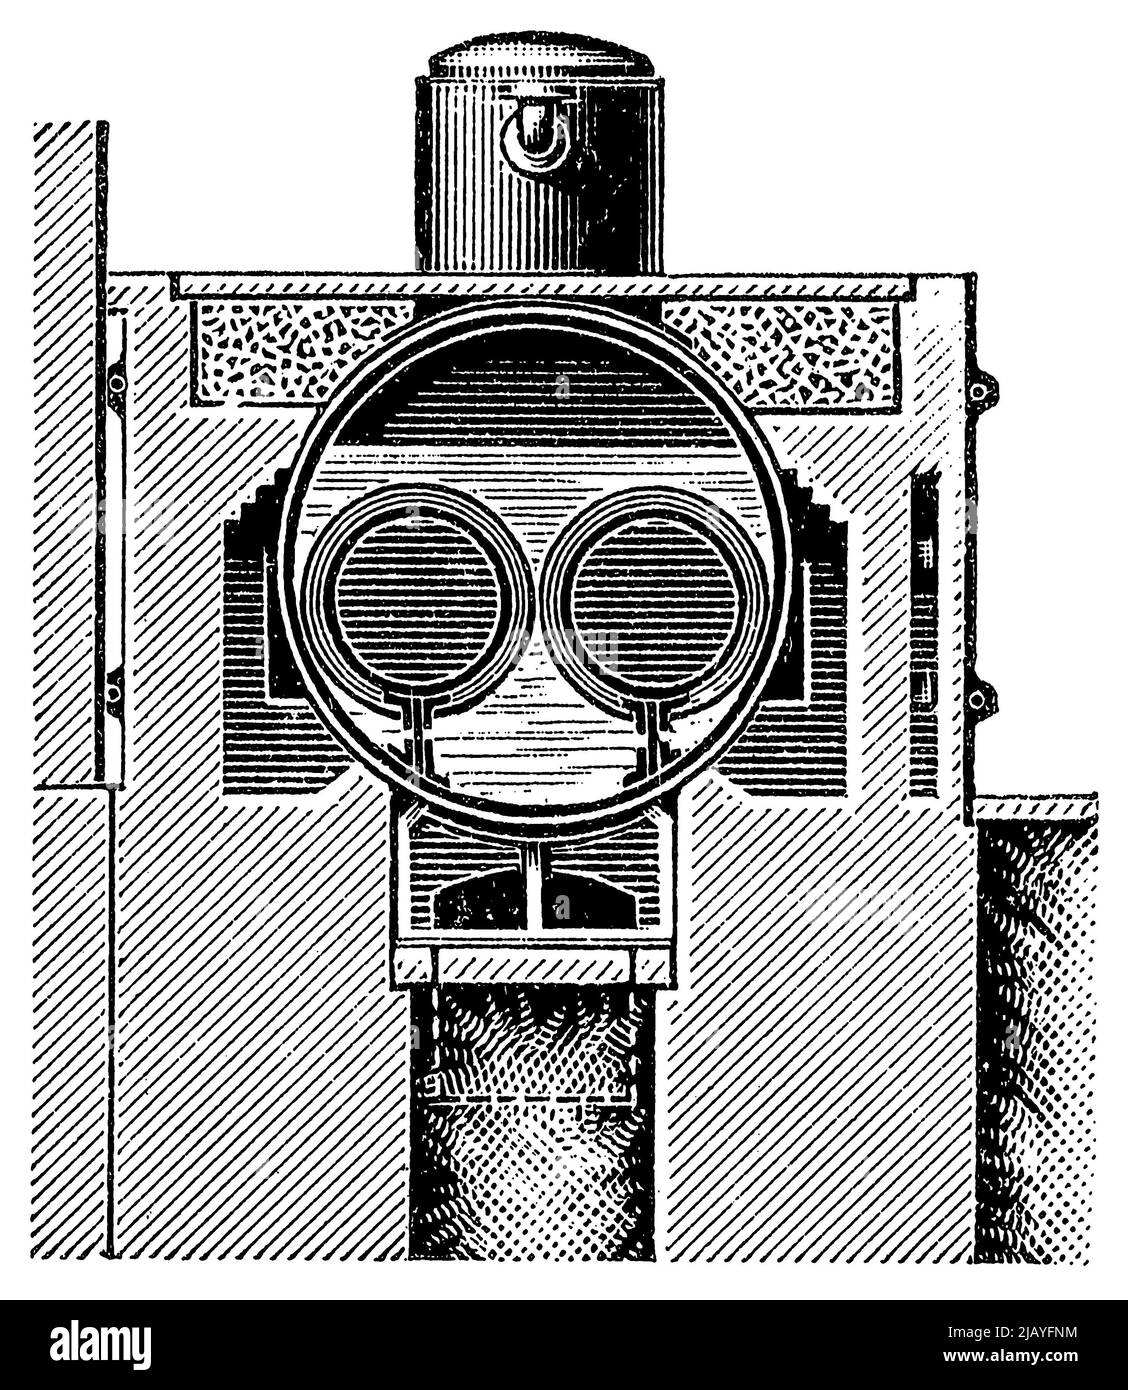 Caldera de dos gases, vista en sección. Publicación del libro 'Meyers Konversations-Lexikon', Volumen 2, Leipzig, Alemania, 1910 Foto de stock